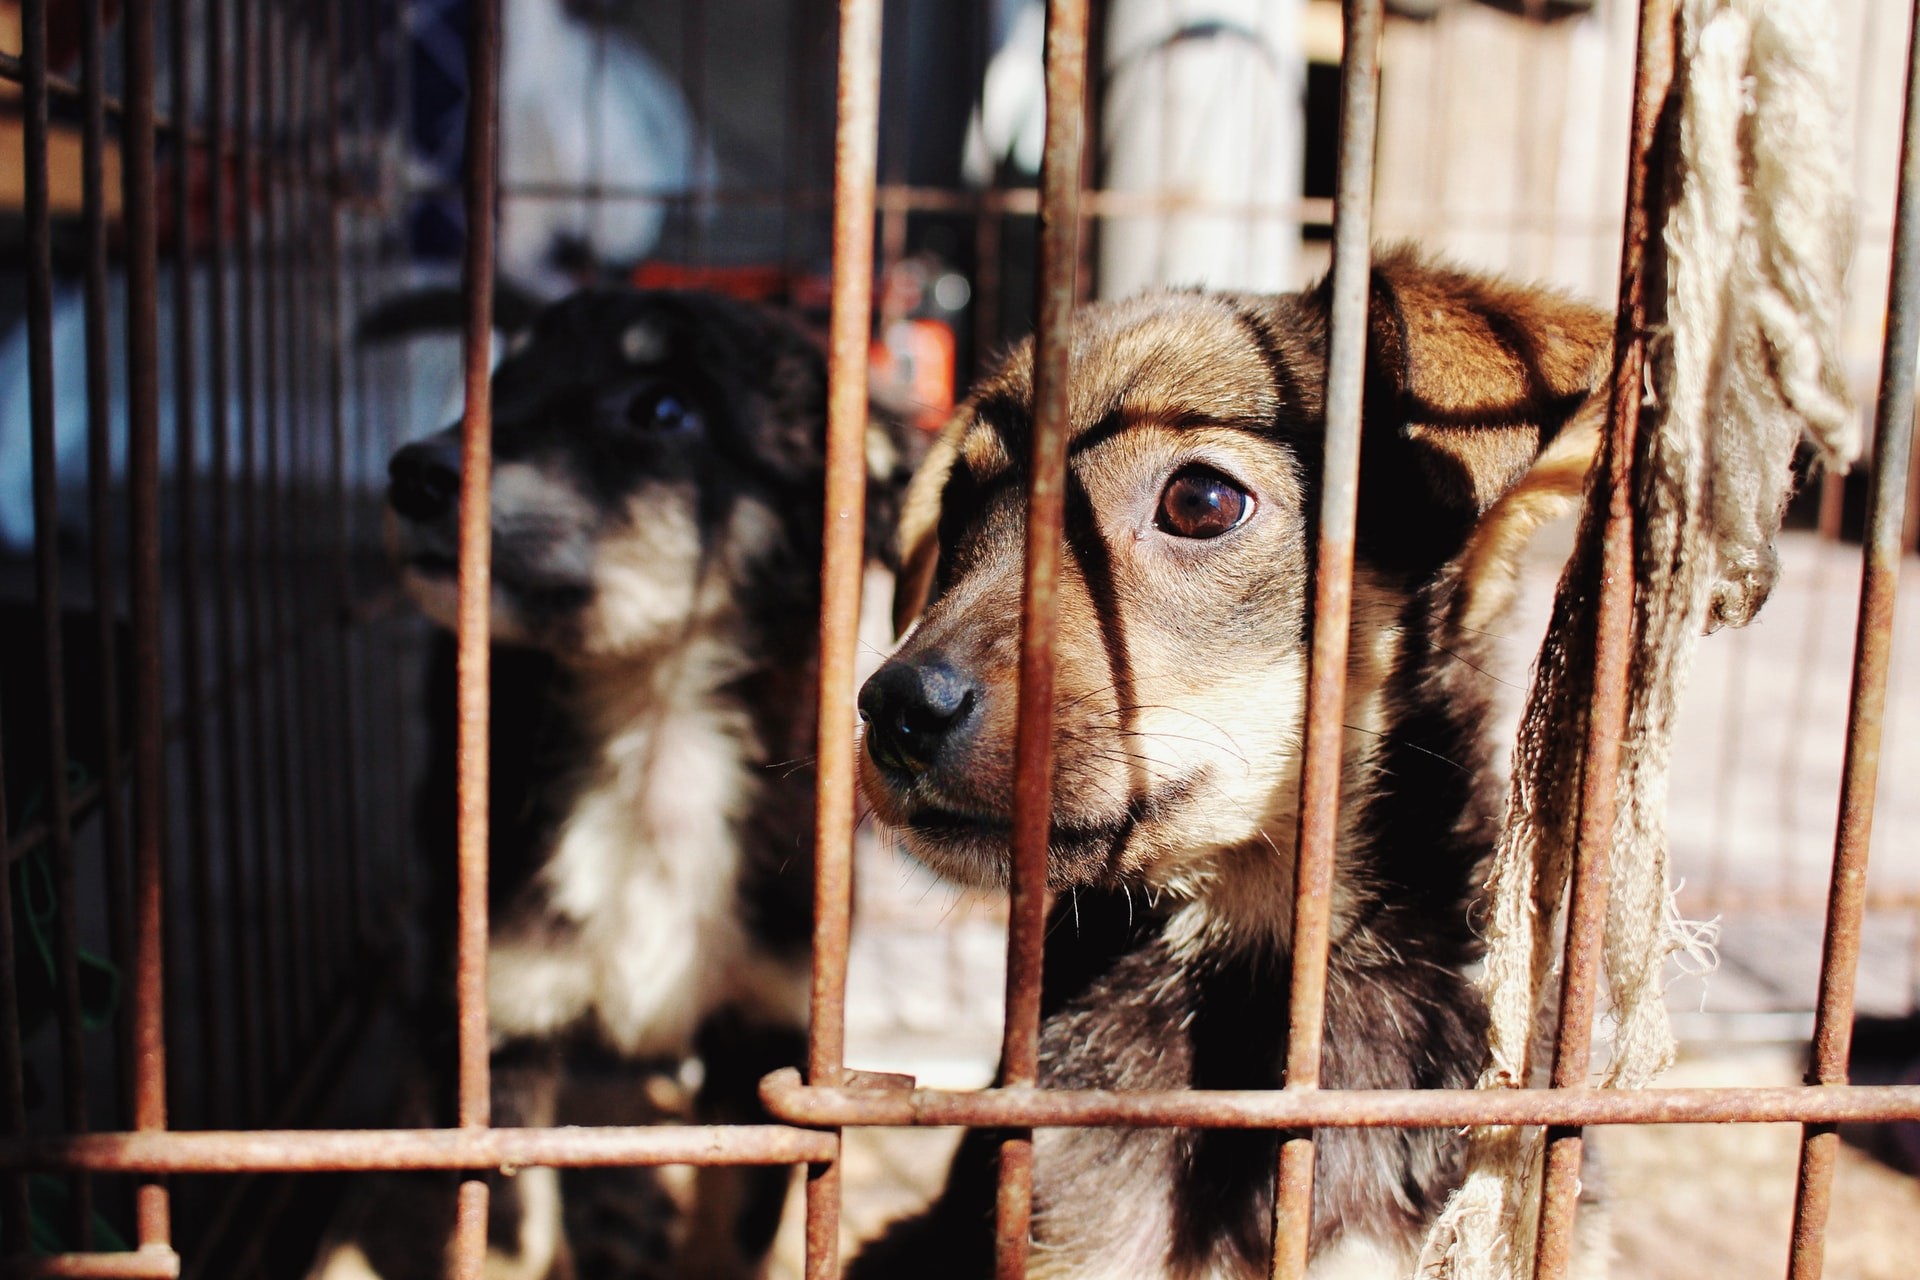 Síndicos e administradores de condomínios serão obrigados por lei a denunciar maus-tratos de animais (Foto: Unsplash/ CreativeCommons)